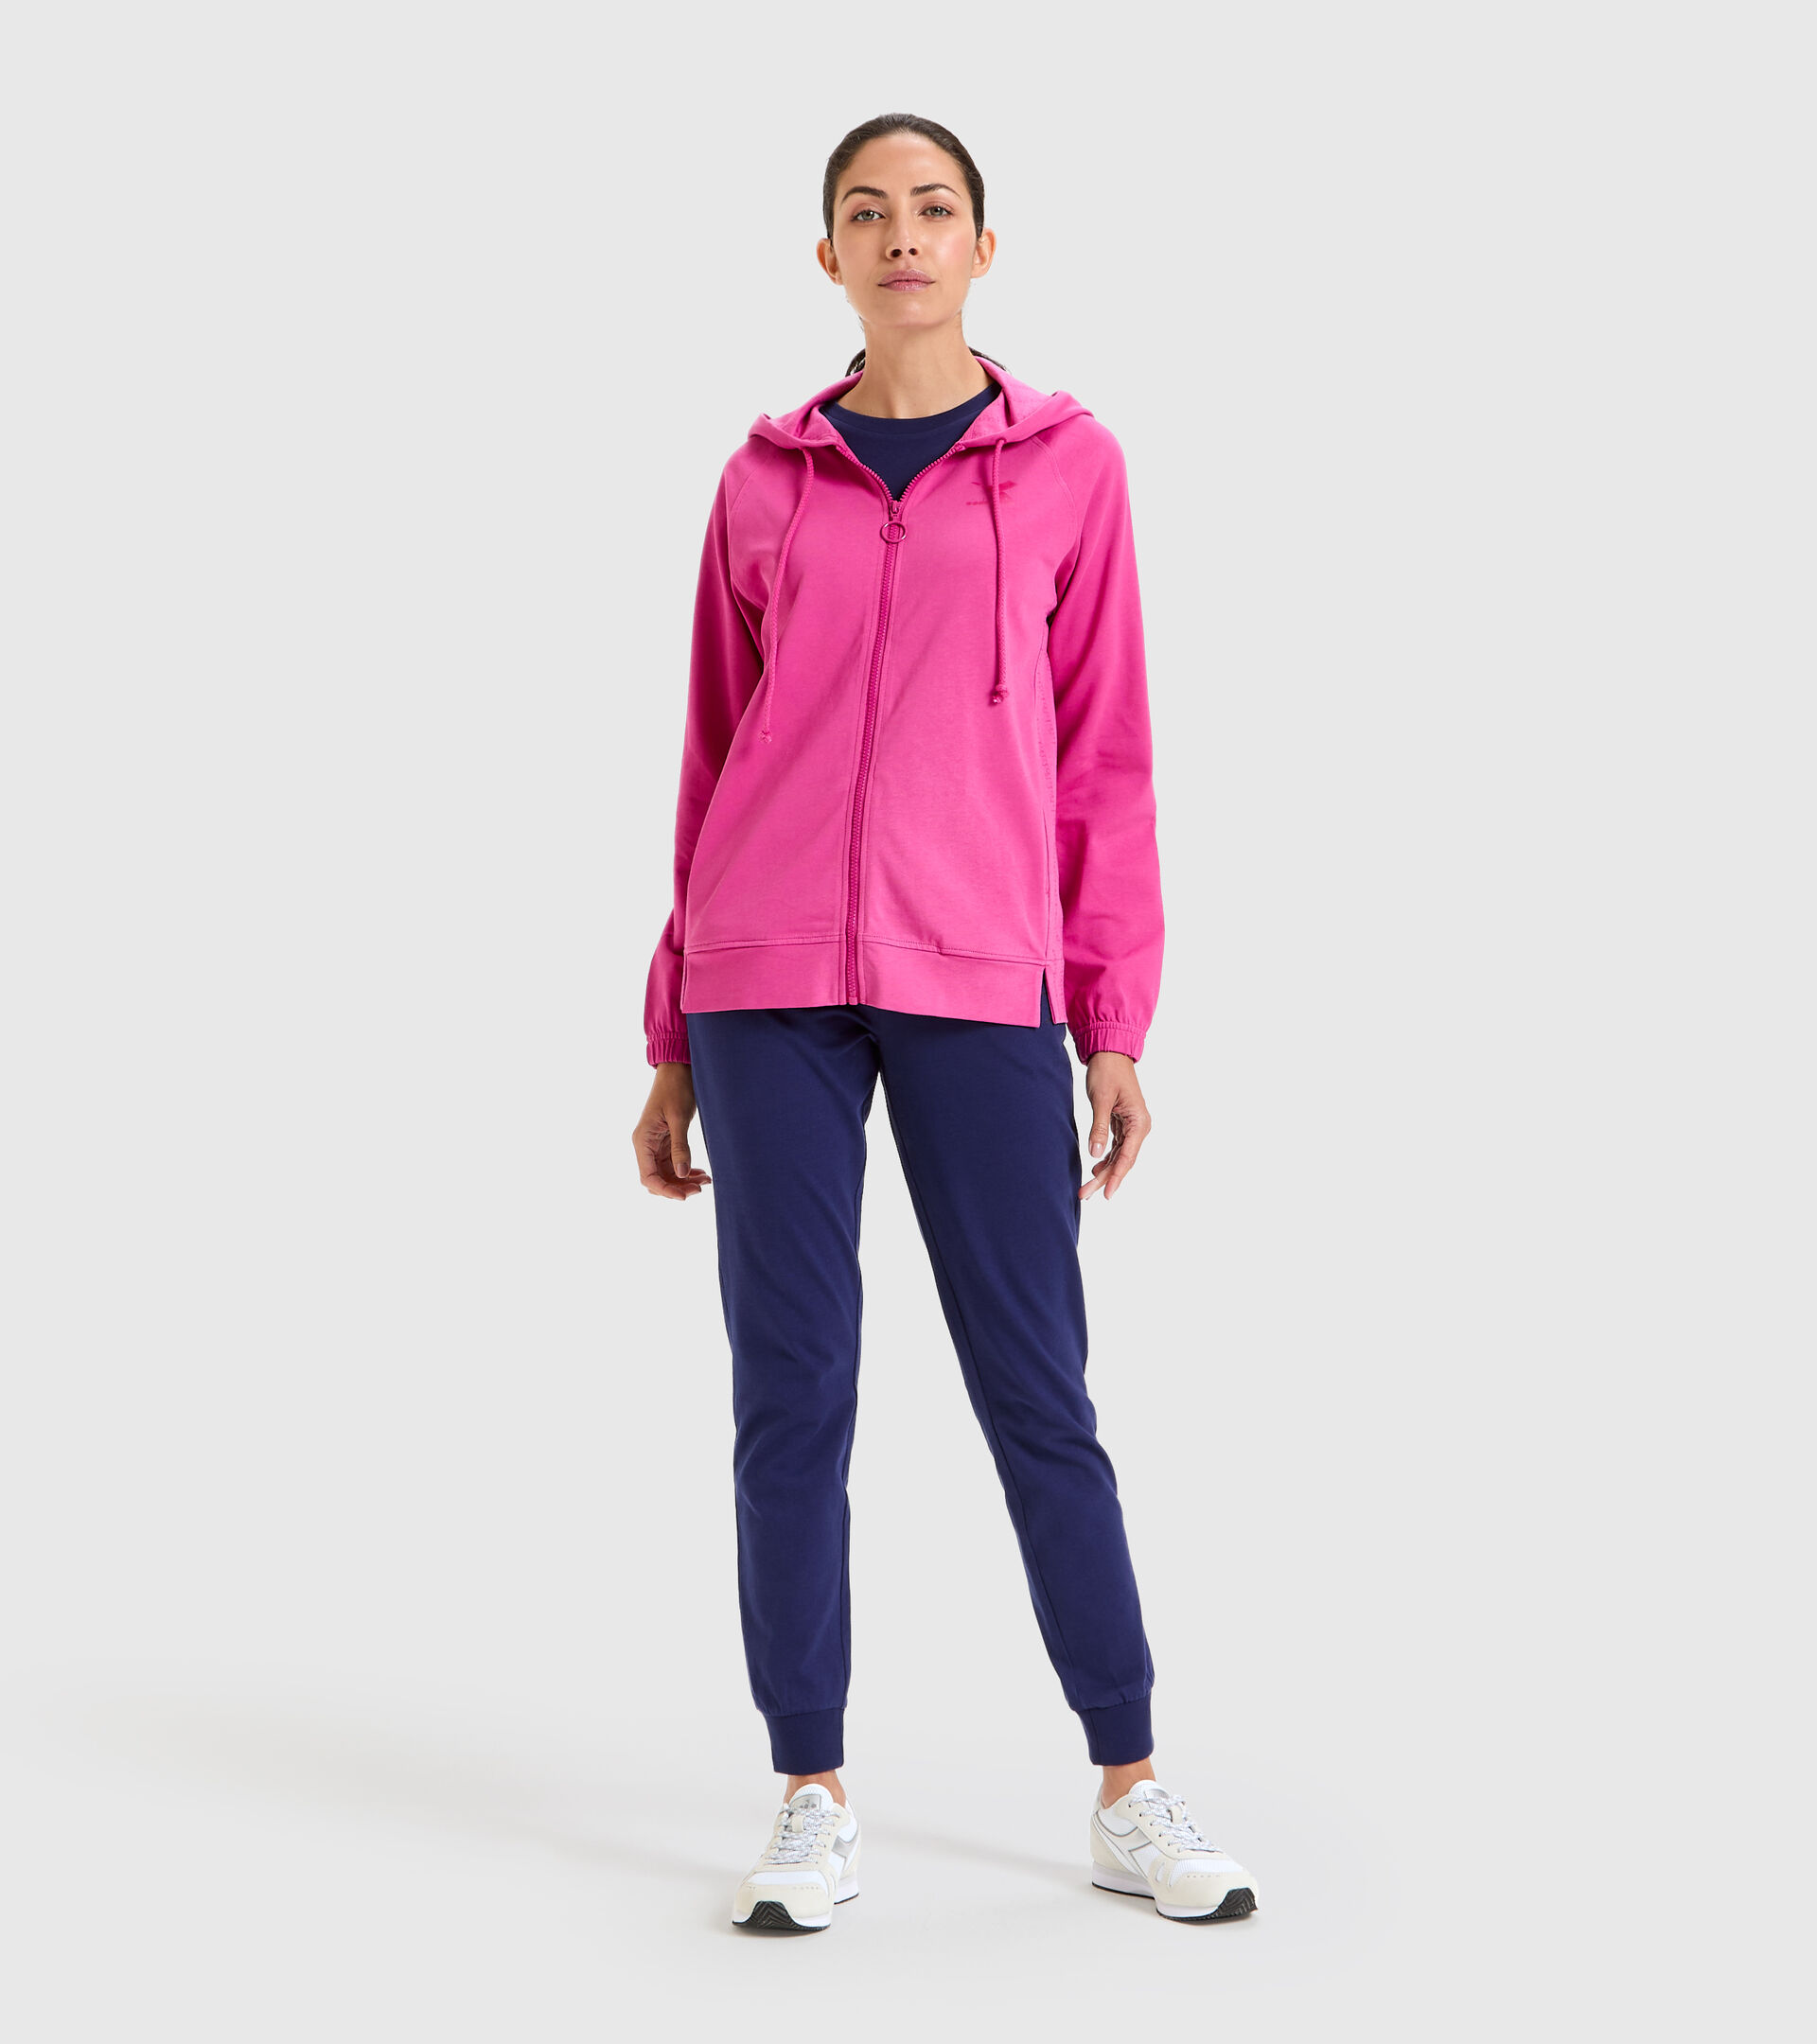 Survêtement de sport en coton - Femme L.TRACKSUIT HD CORE ROSE IBIS - Diadora